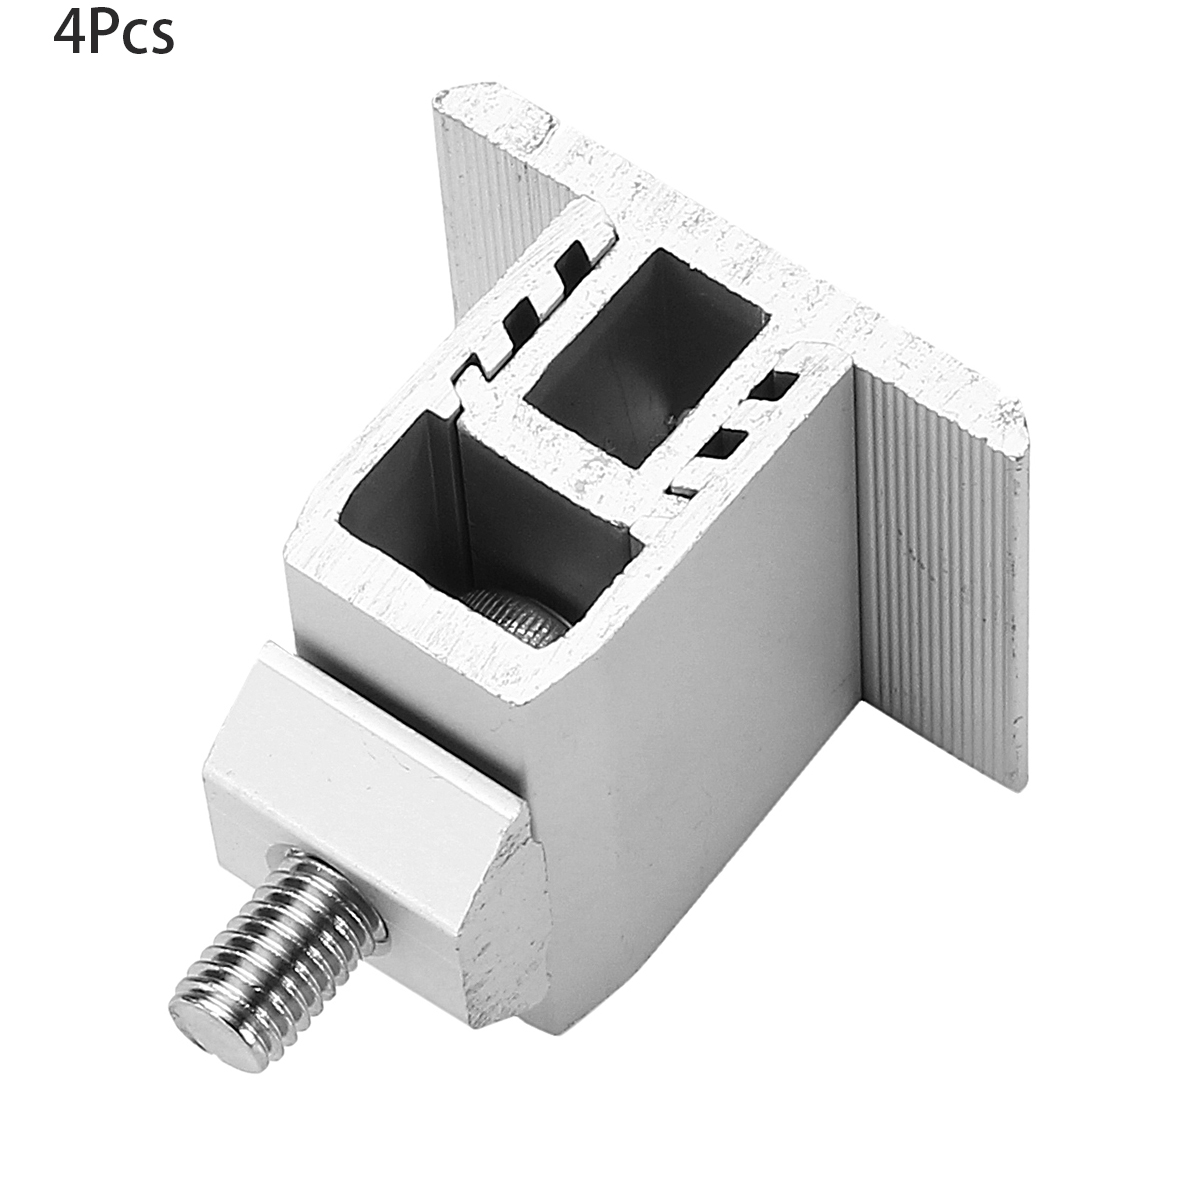 4Pcs-Aluminum-Alloy-Solar-Panel-Mounting-Bracket-19mm-29mm-Adjustment-Range-for-Framed-Solar-Panel-1366369-1